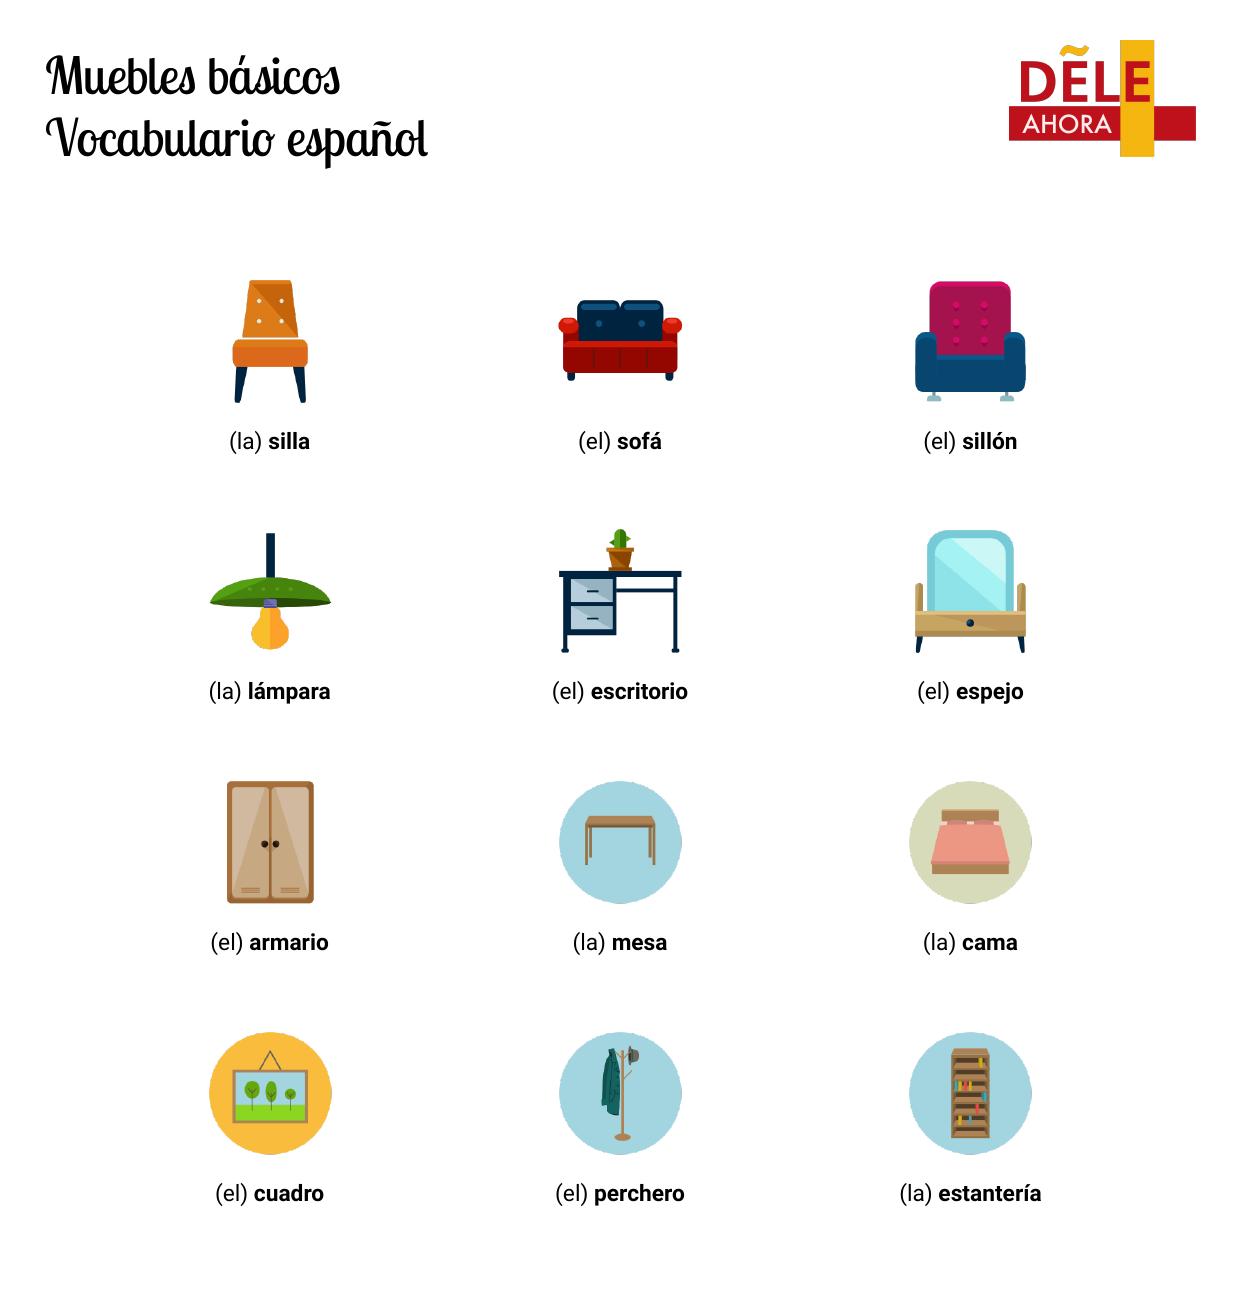 Objetos decorativos de la casa - Vocabulario en español